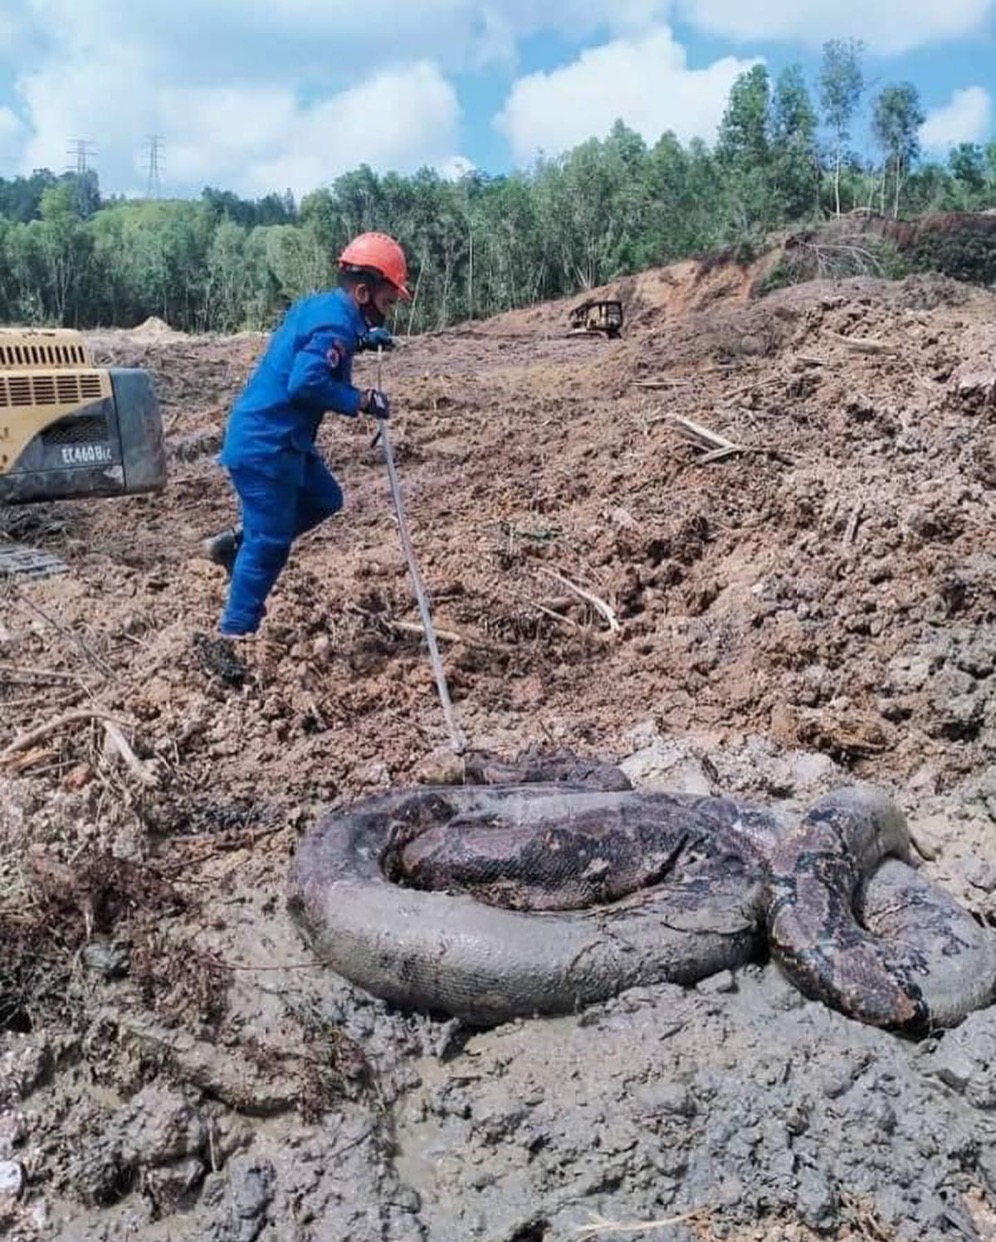 Penemuan Dua Ular Sawa Gergasi Di Tapak Pembinaan Di Kampung Gong Nangka, Marang - sajagempak.com